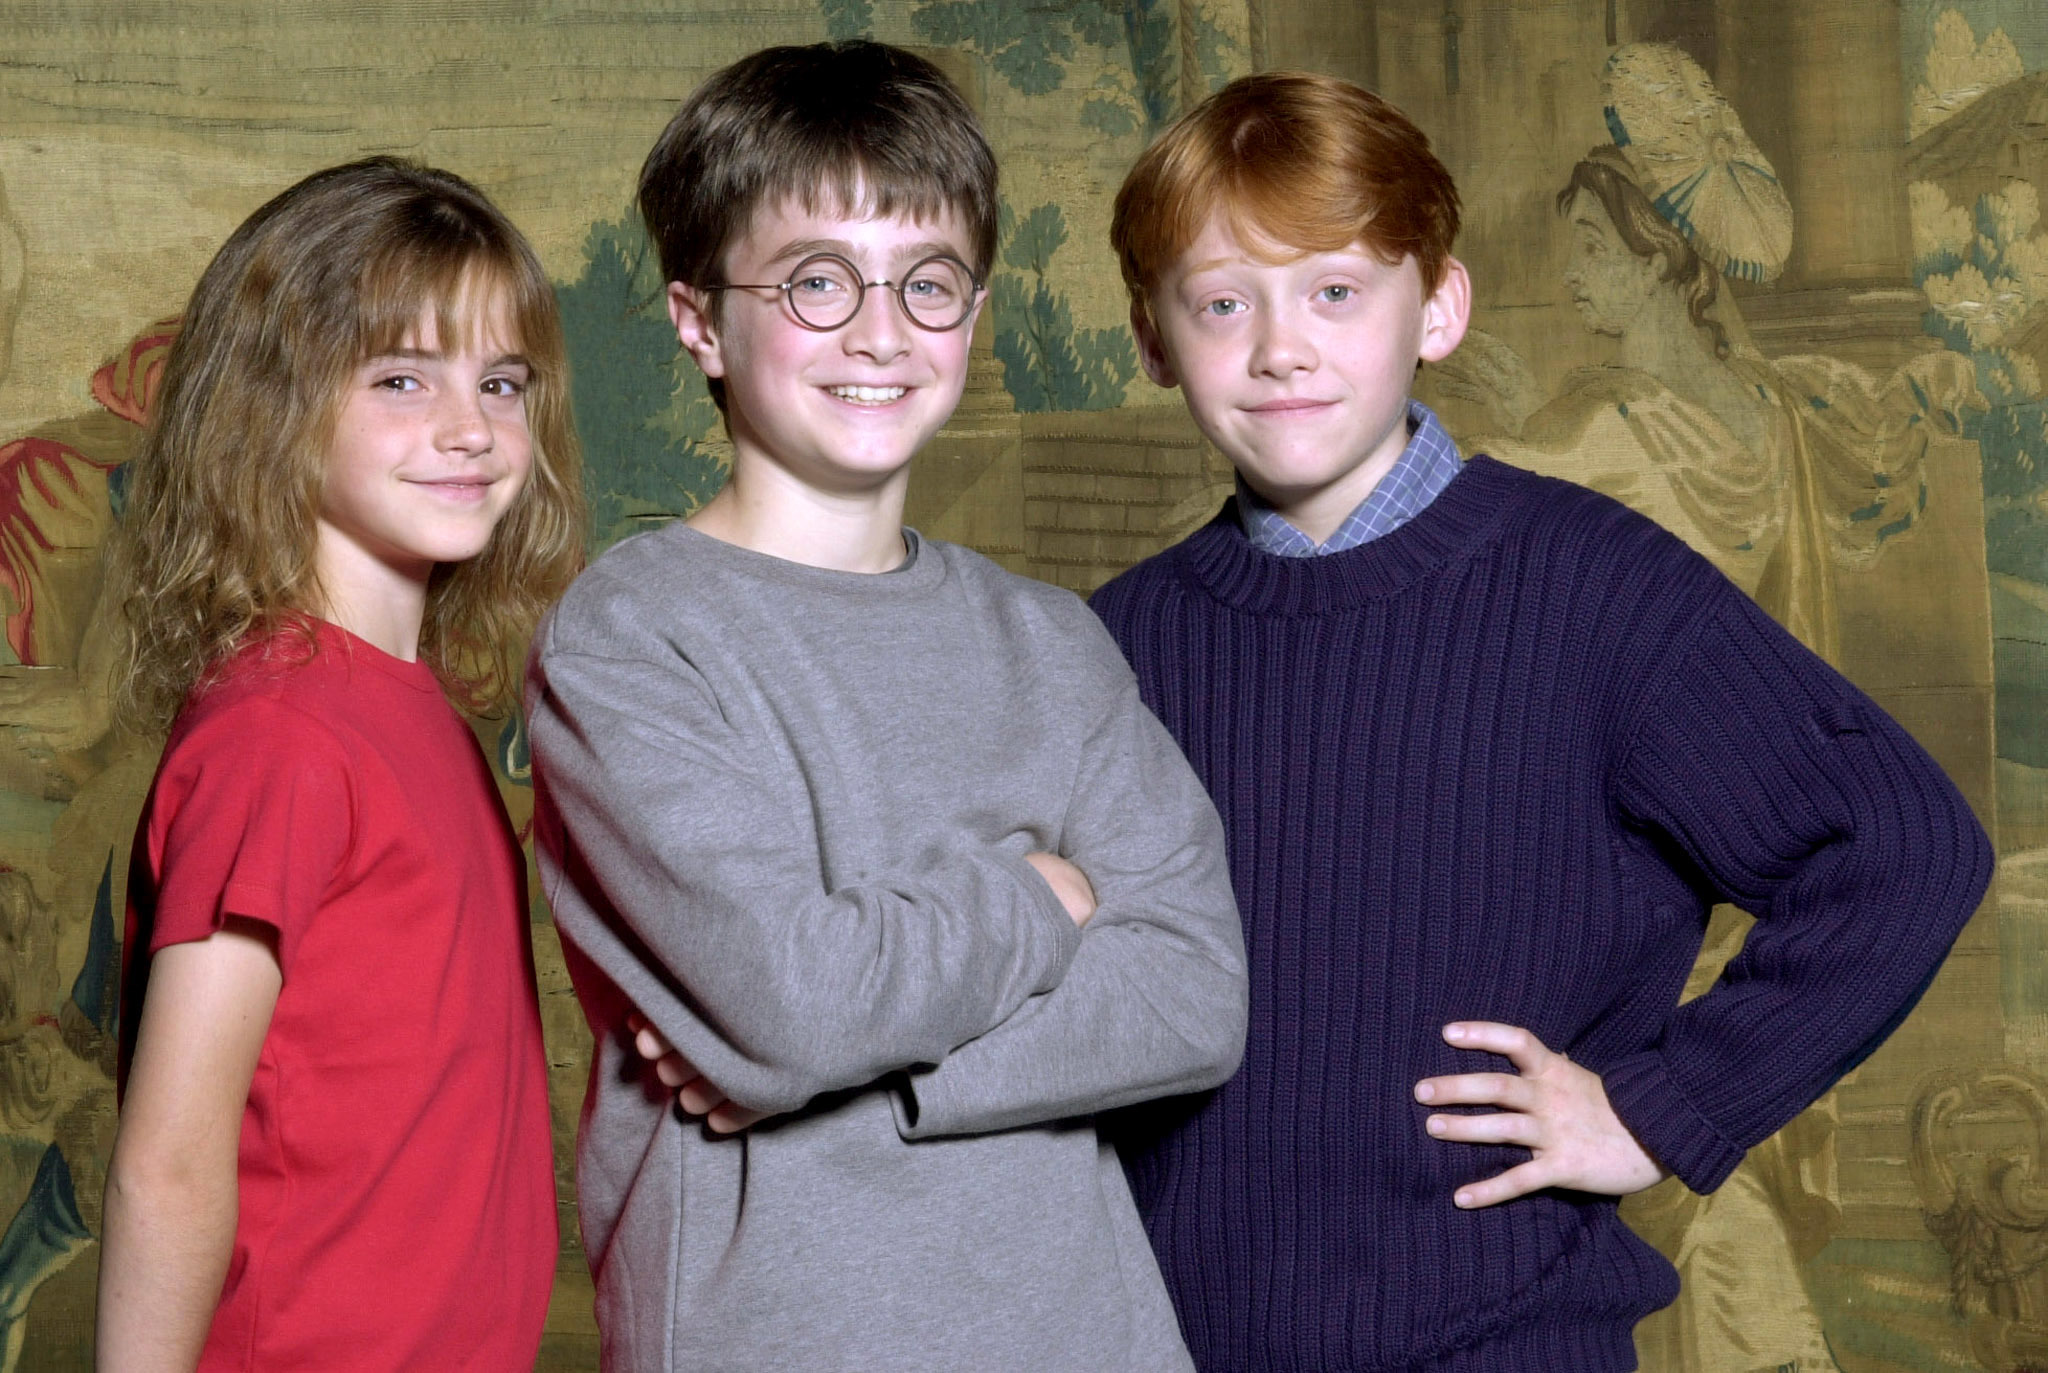 20 years later. Actorii din „Harry Potter” s-au reunit pentru un proiect special Ce surprize îi așteaptă pe fani?